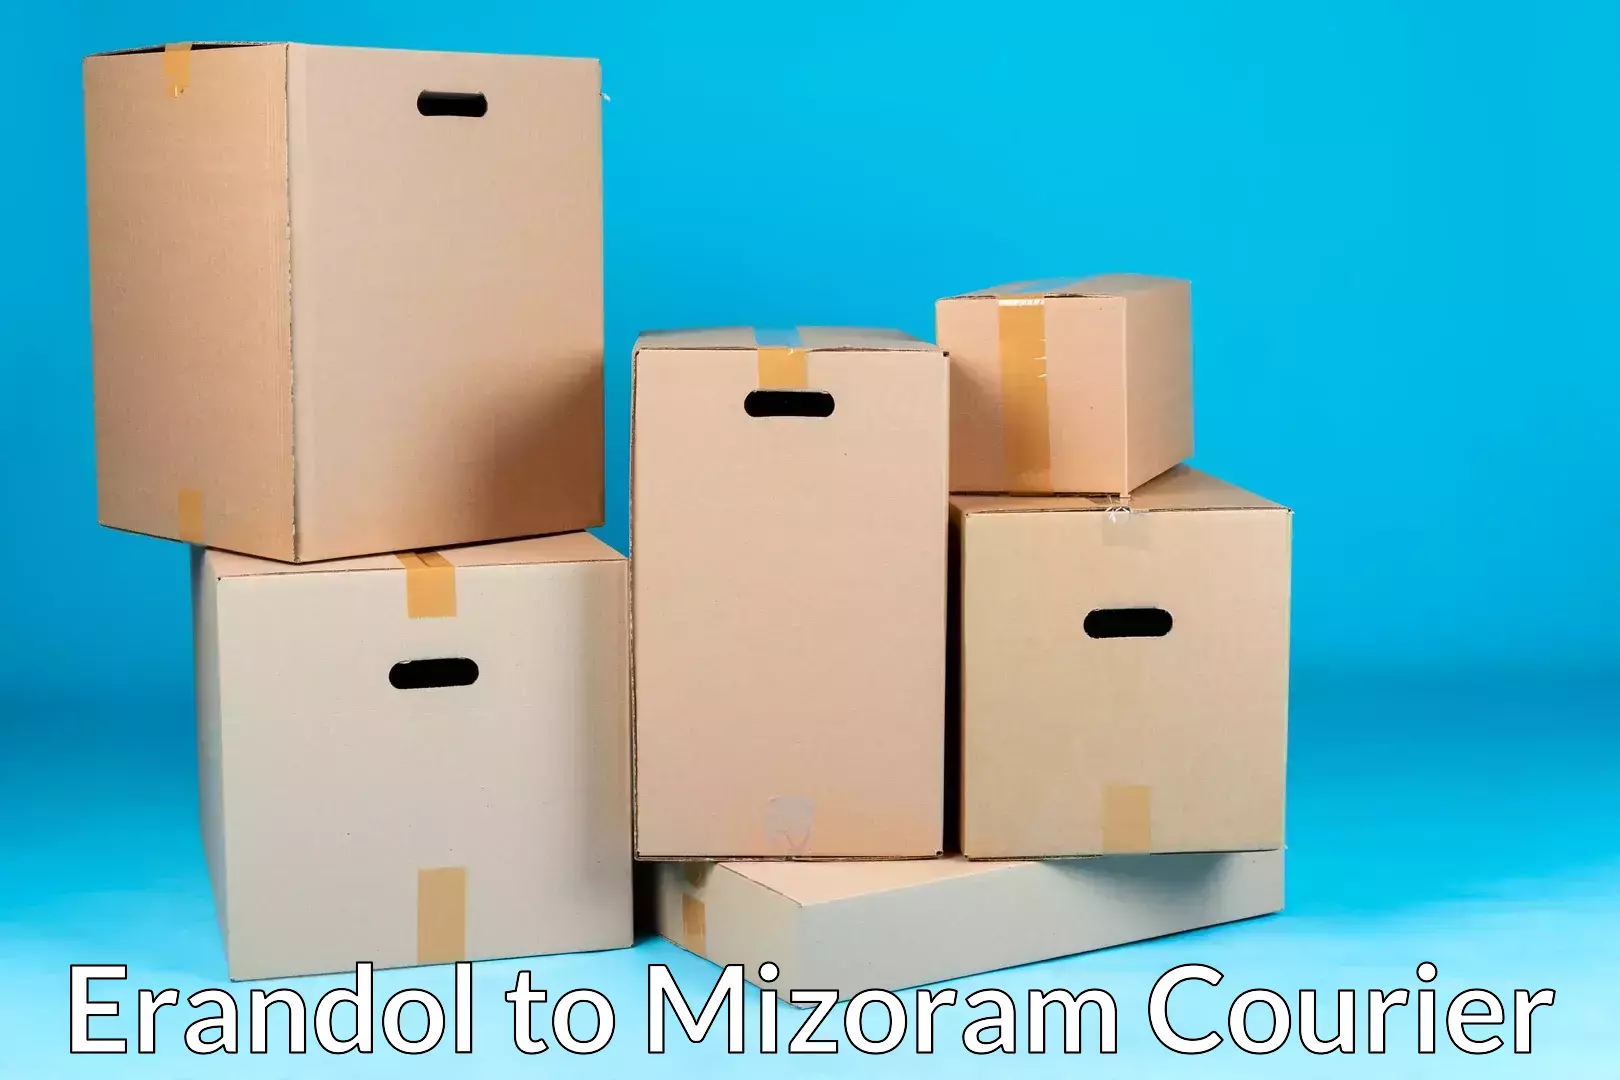 Stress-free furniture moving Erandol to Mizoram